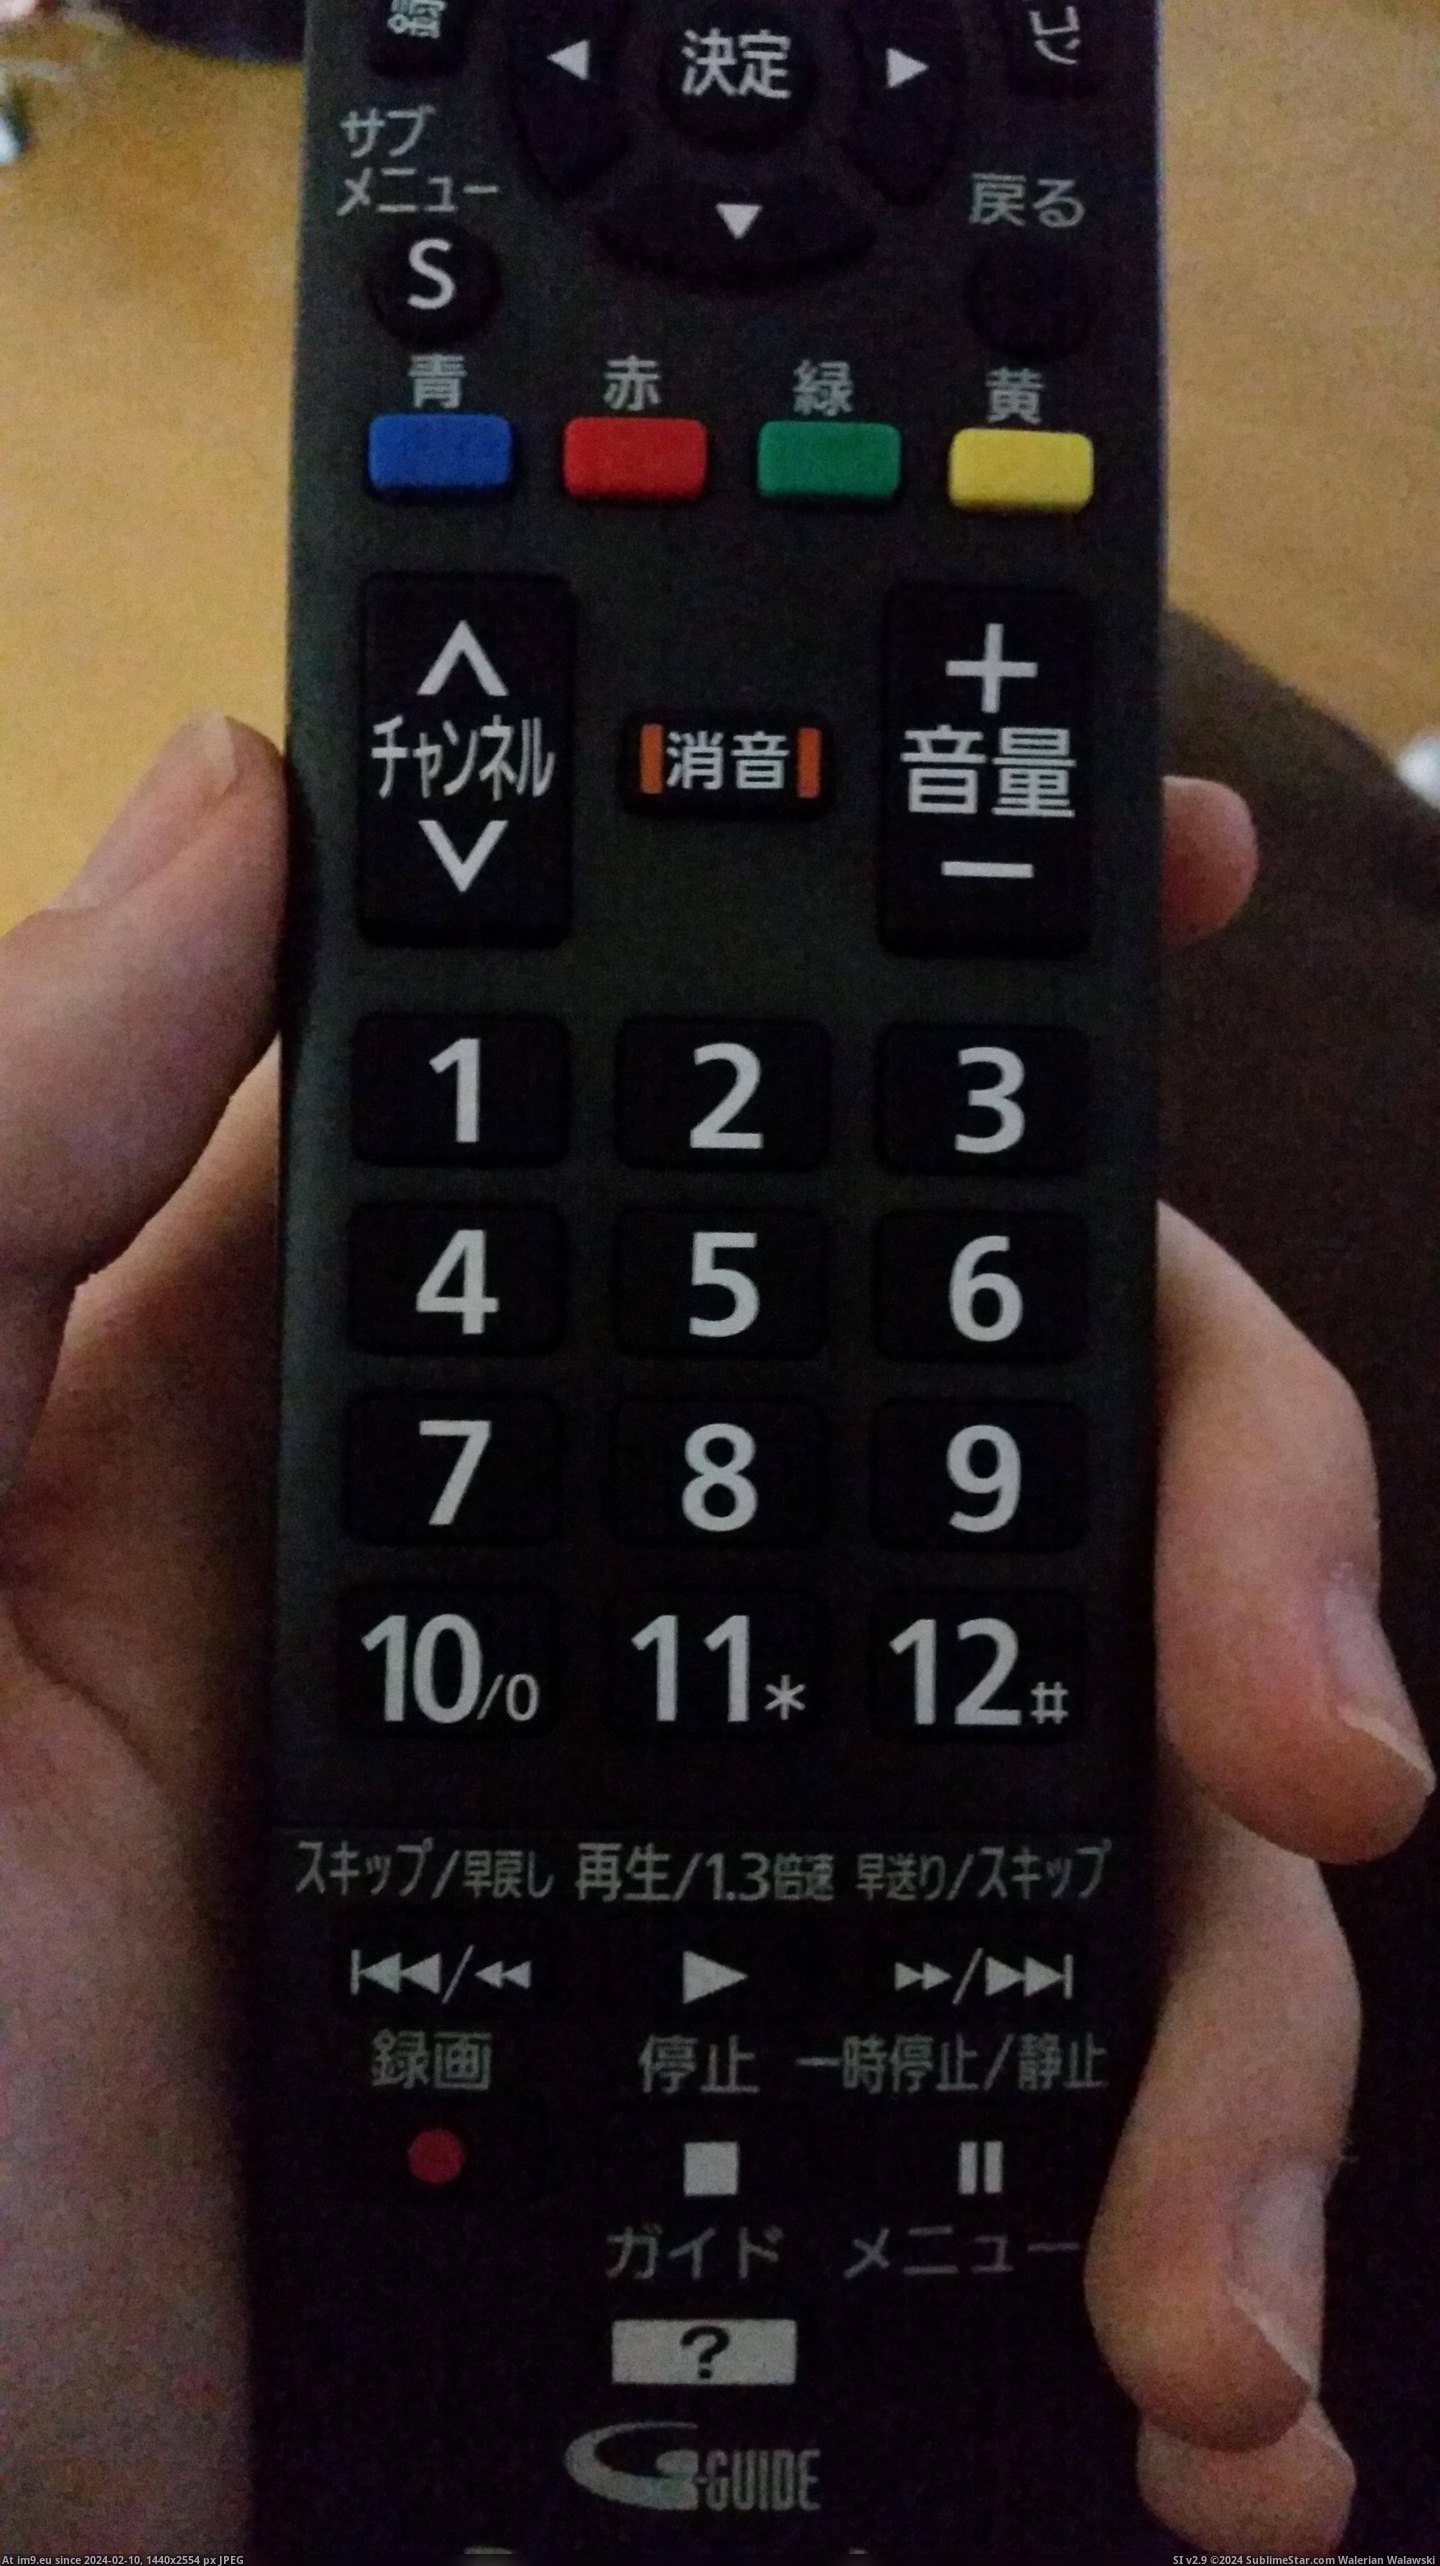 #Japanese #Numbers #Remote [Mildlyinteresting] The numbers on my Japanese TV remote go up to 12. Pic. (Bild von album My r/MILDLYINTERESTING favs))